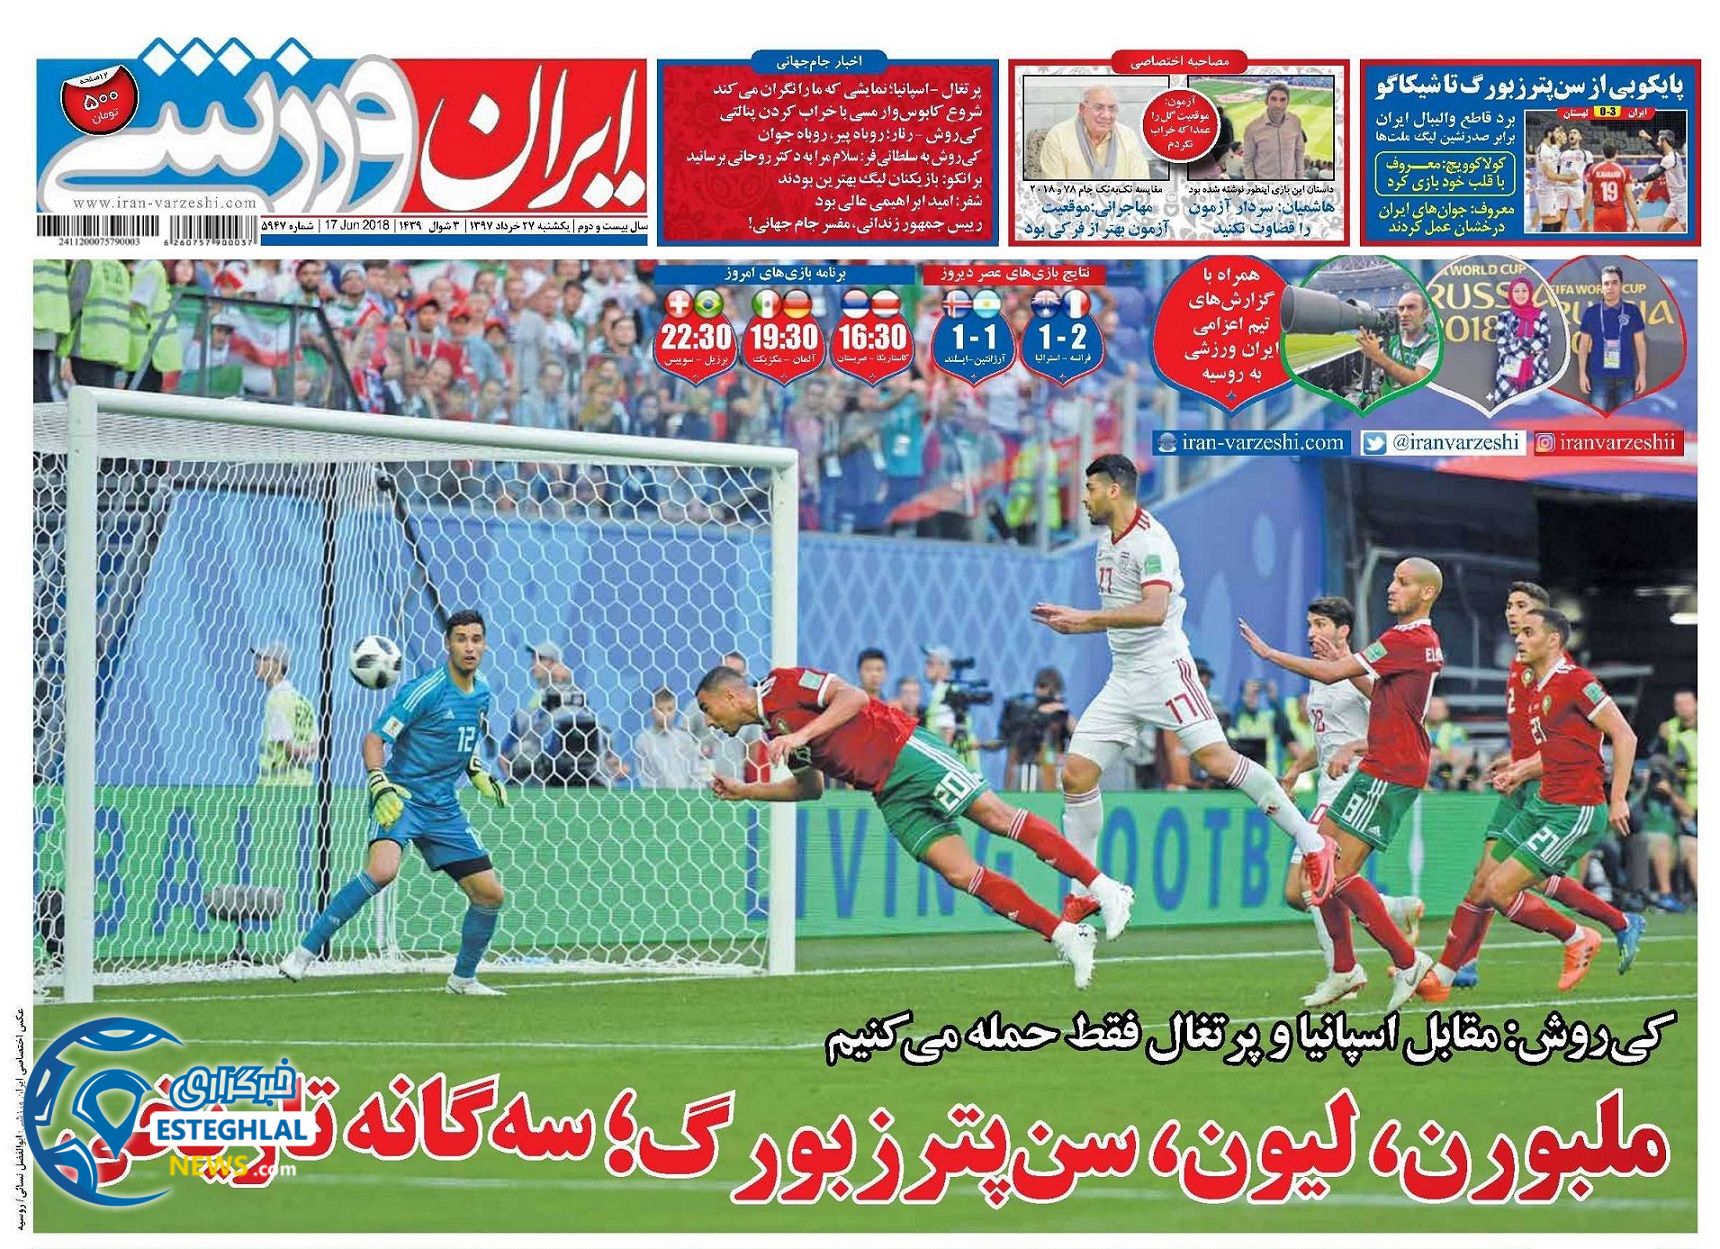   روزنامه ایران ورزشی یکشنبه 27خرداد 1397     